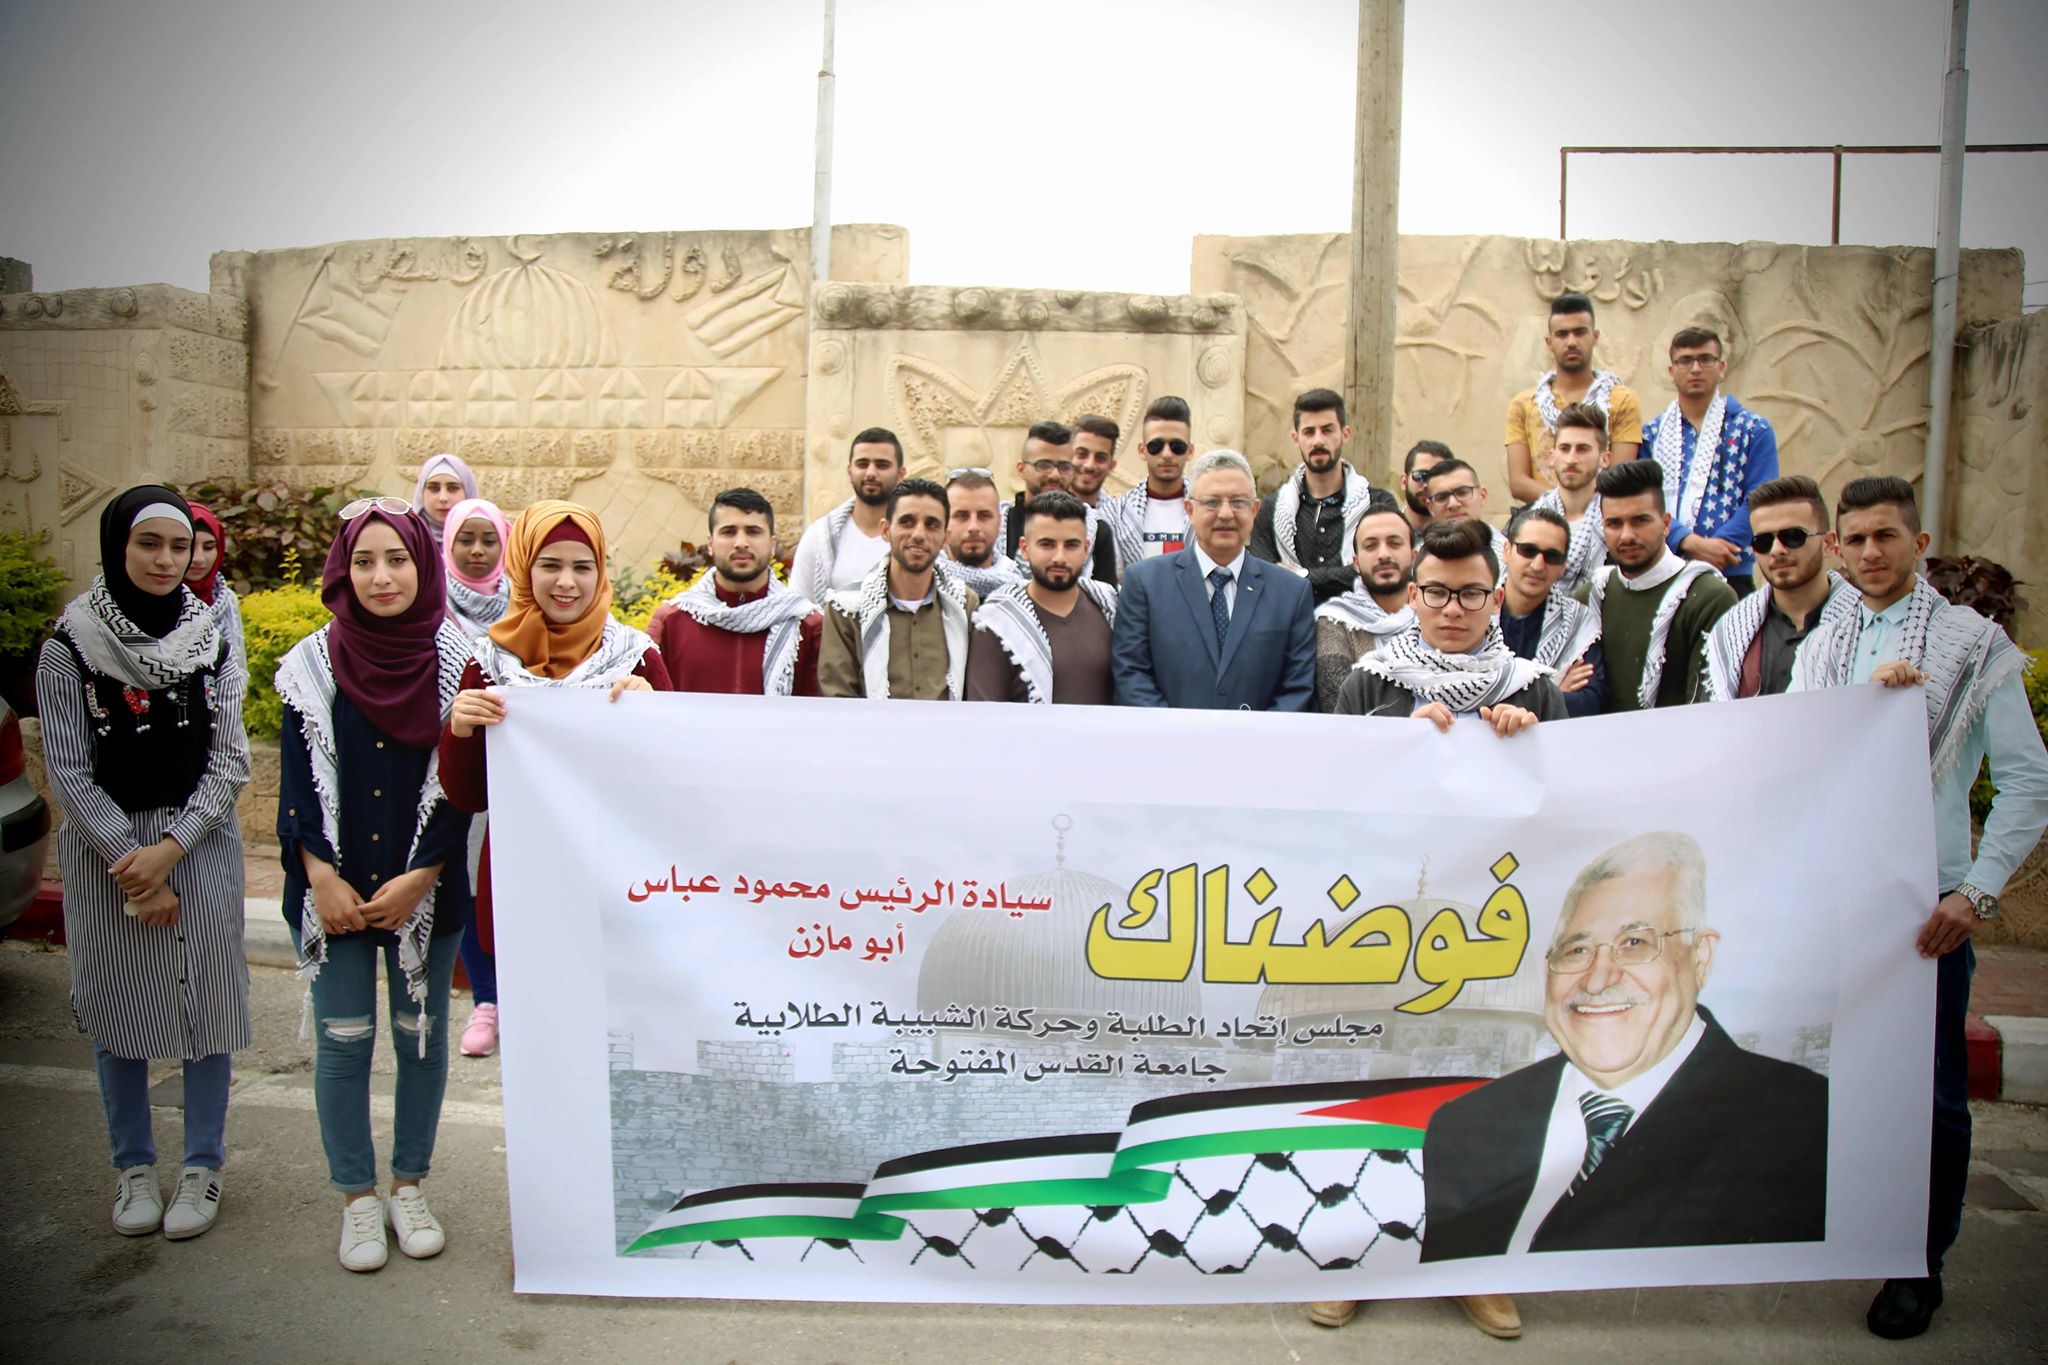 طولكرم: انطلاق حملة “فوضناك” لدعم الرئيس عباس